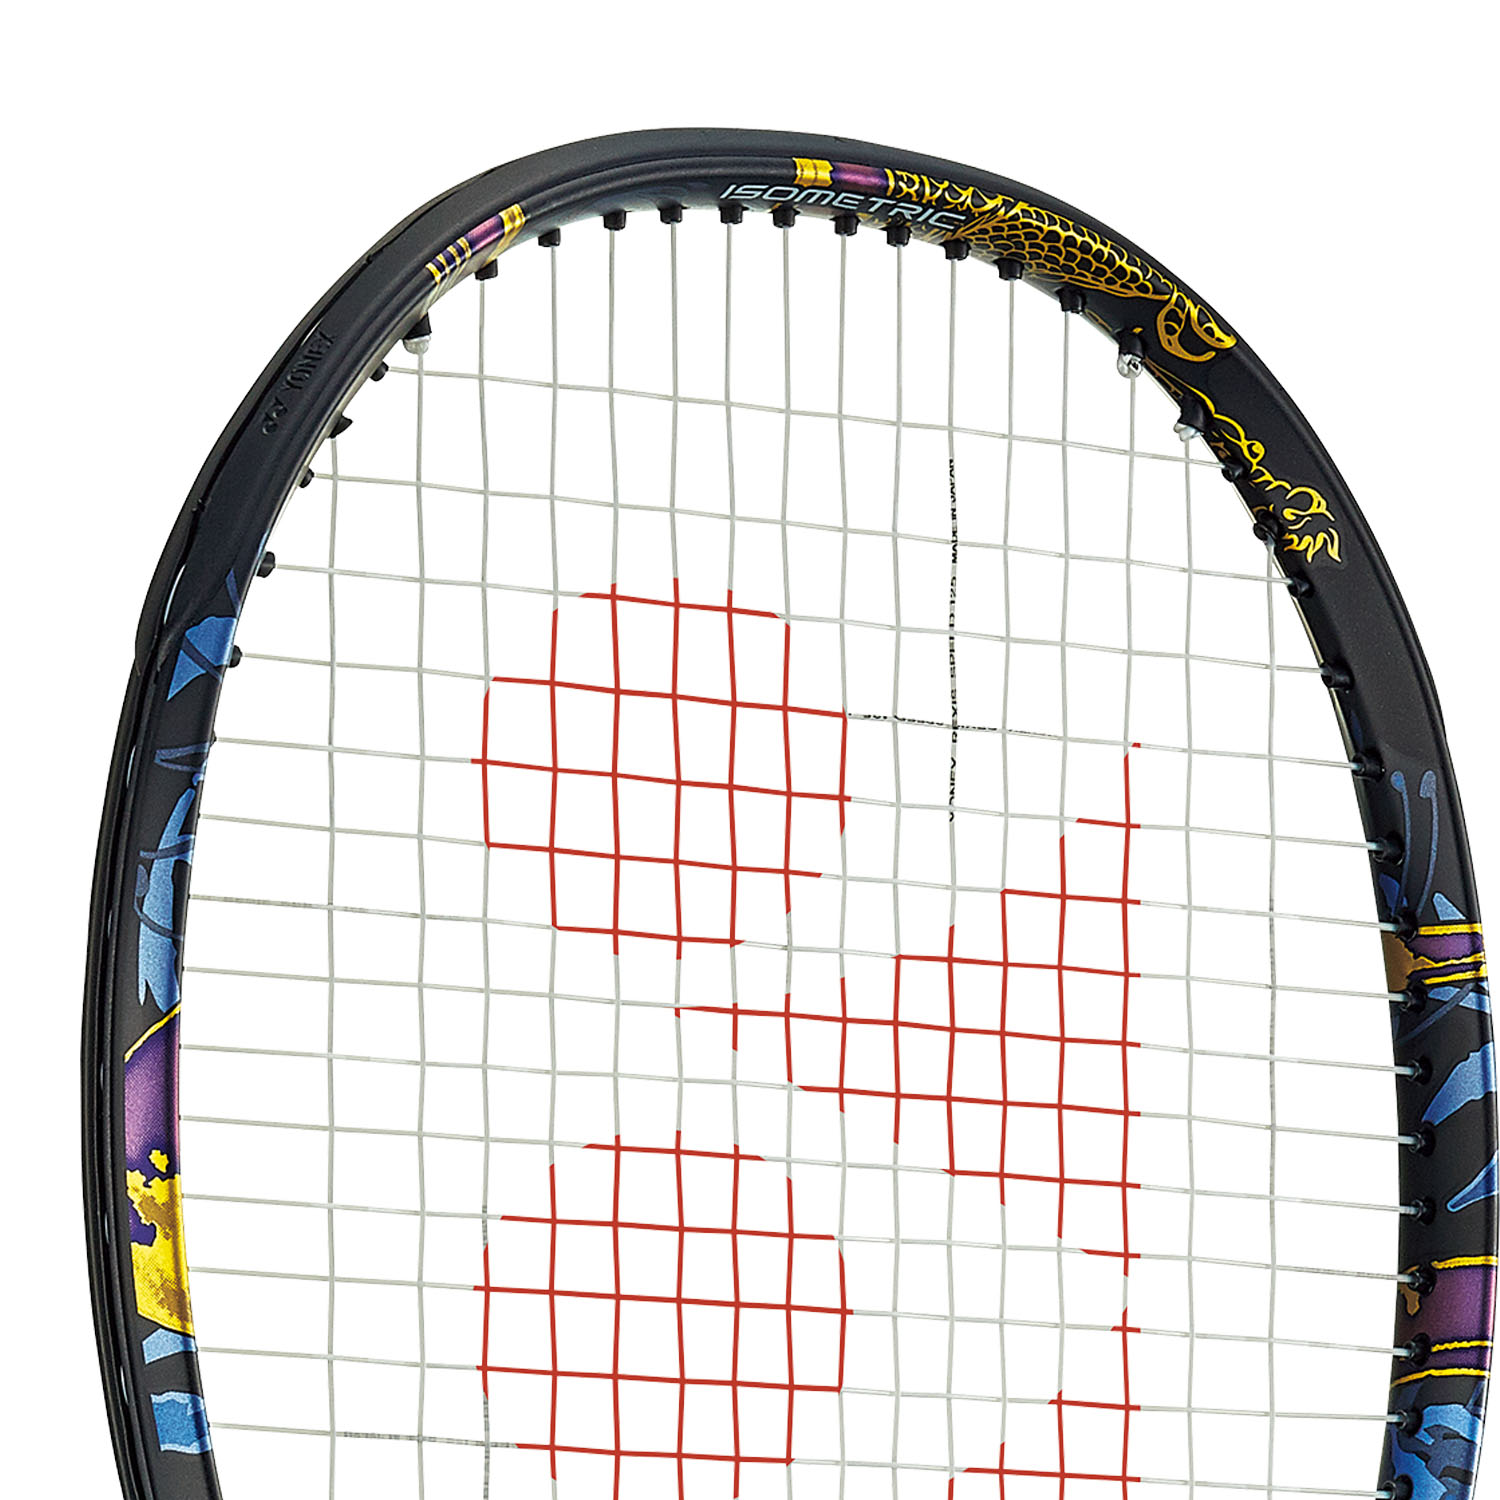 Racchette da badminton 1, 2 e 4 giocatori YONEX 